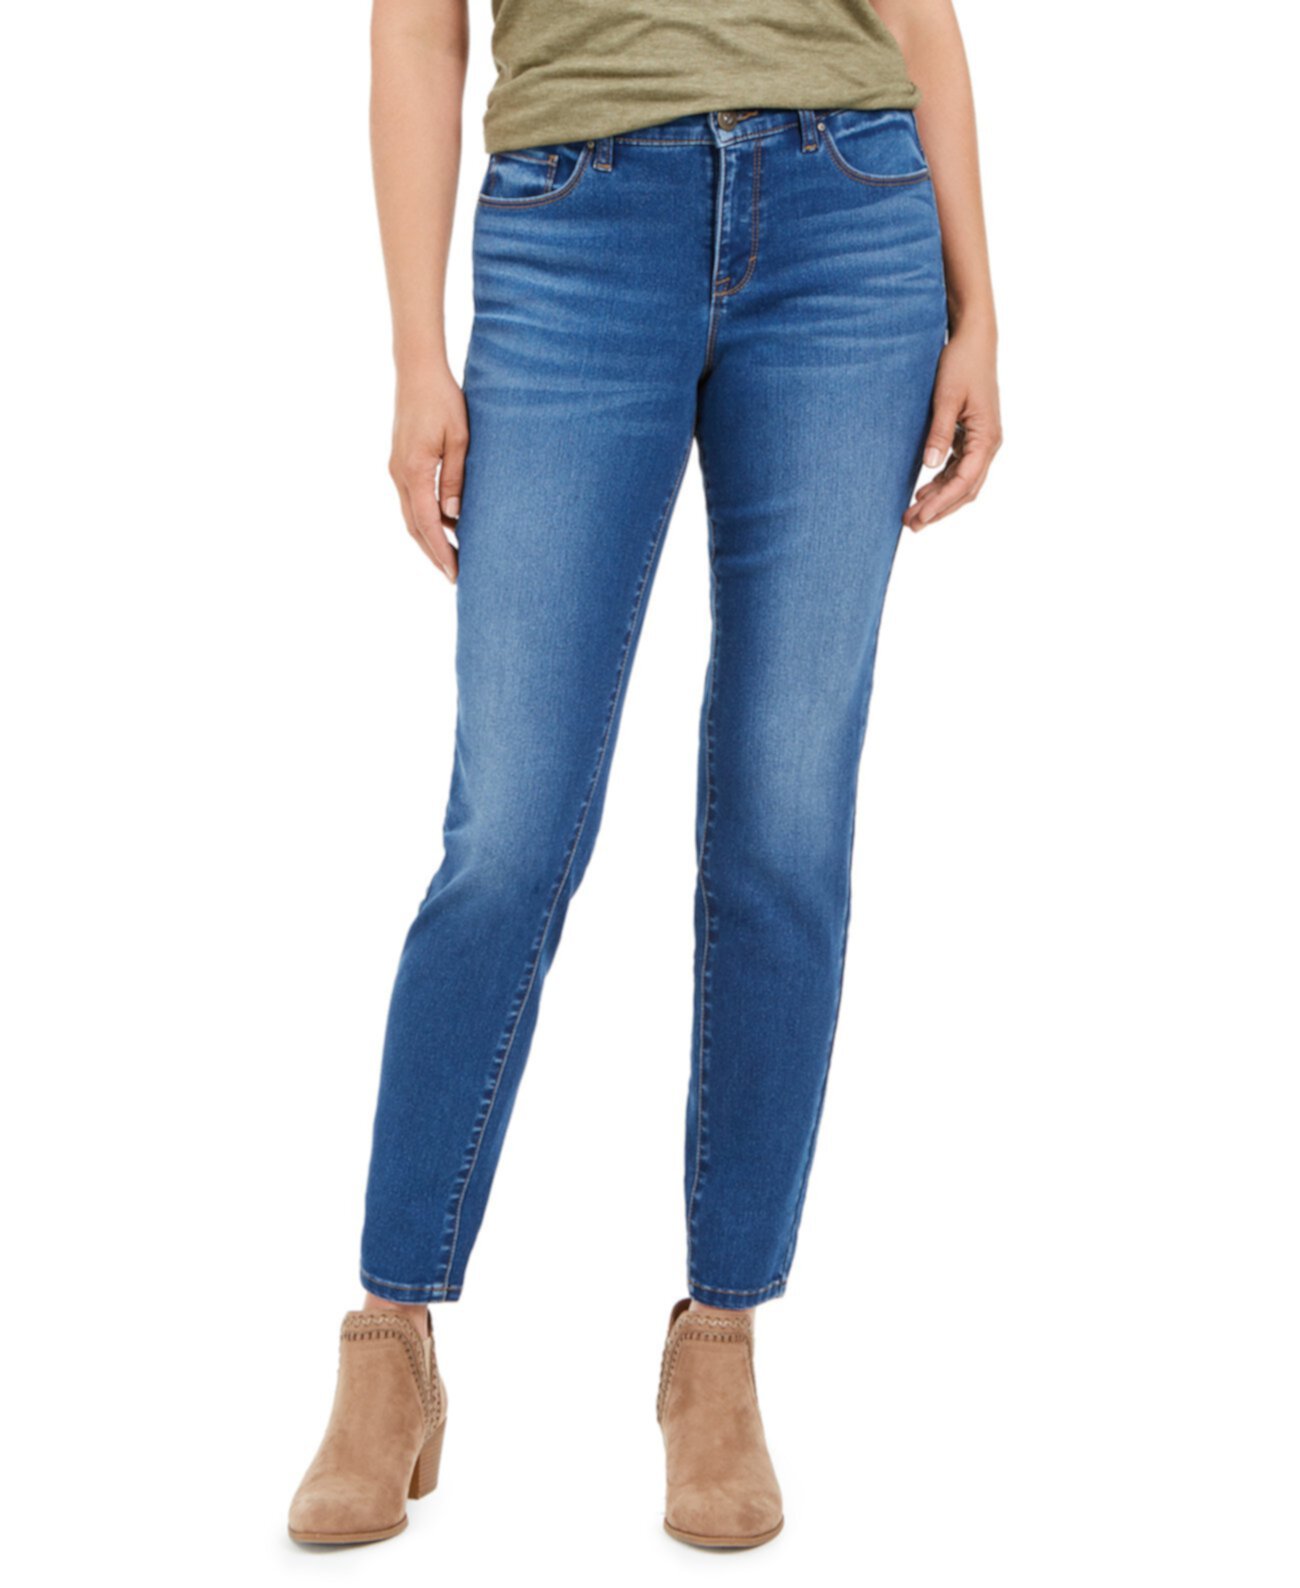 Пышные облегающие джинсы скинни, созданные для Macy's Style & Co